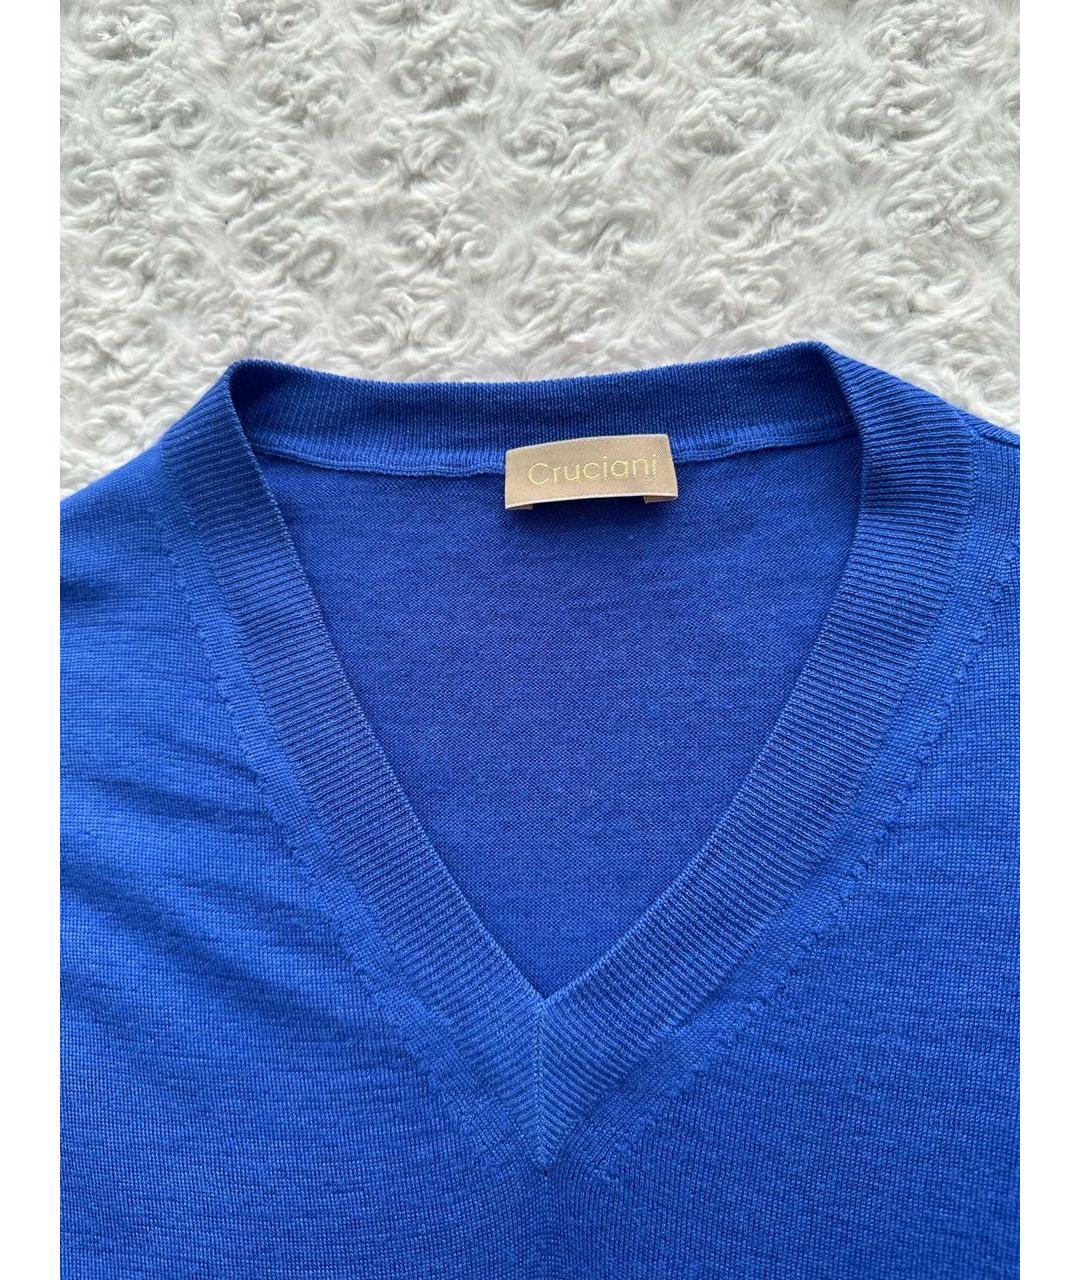 CRUCIANI Синий кашемировый джемпер / свитер, фото 8